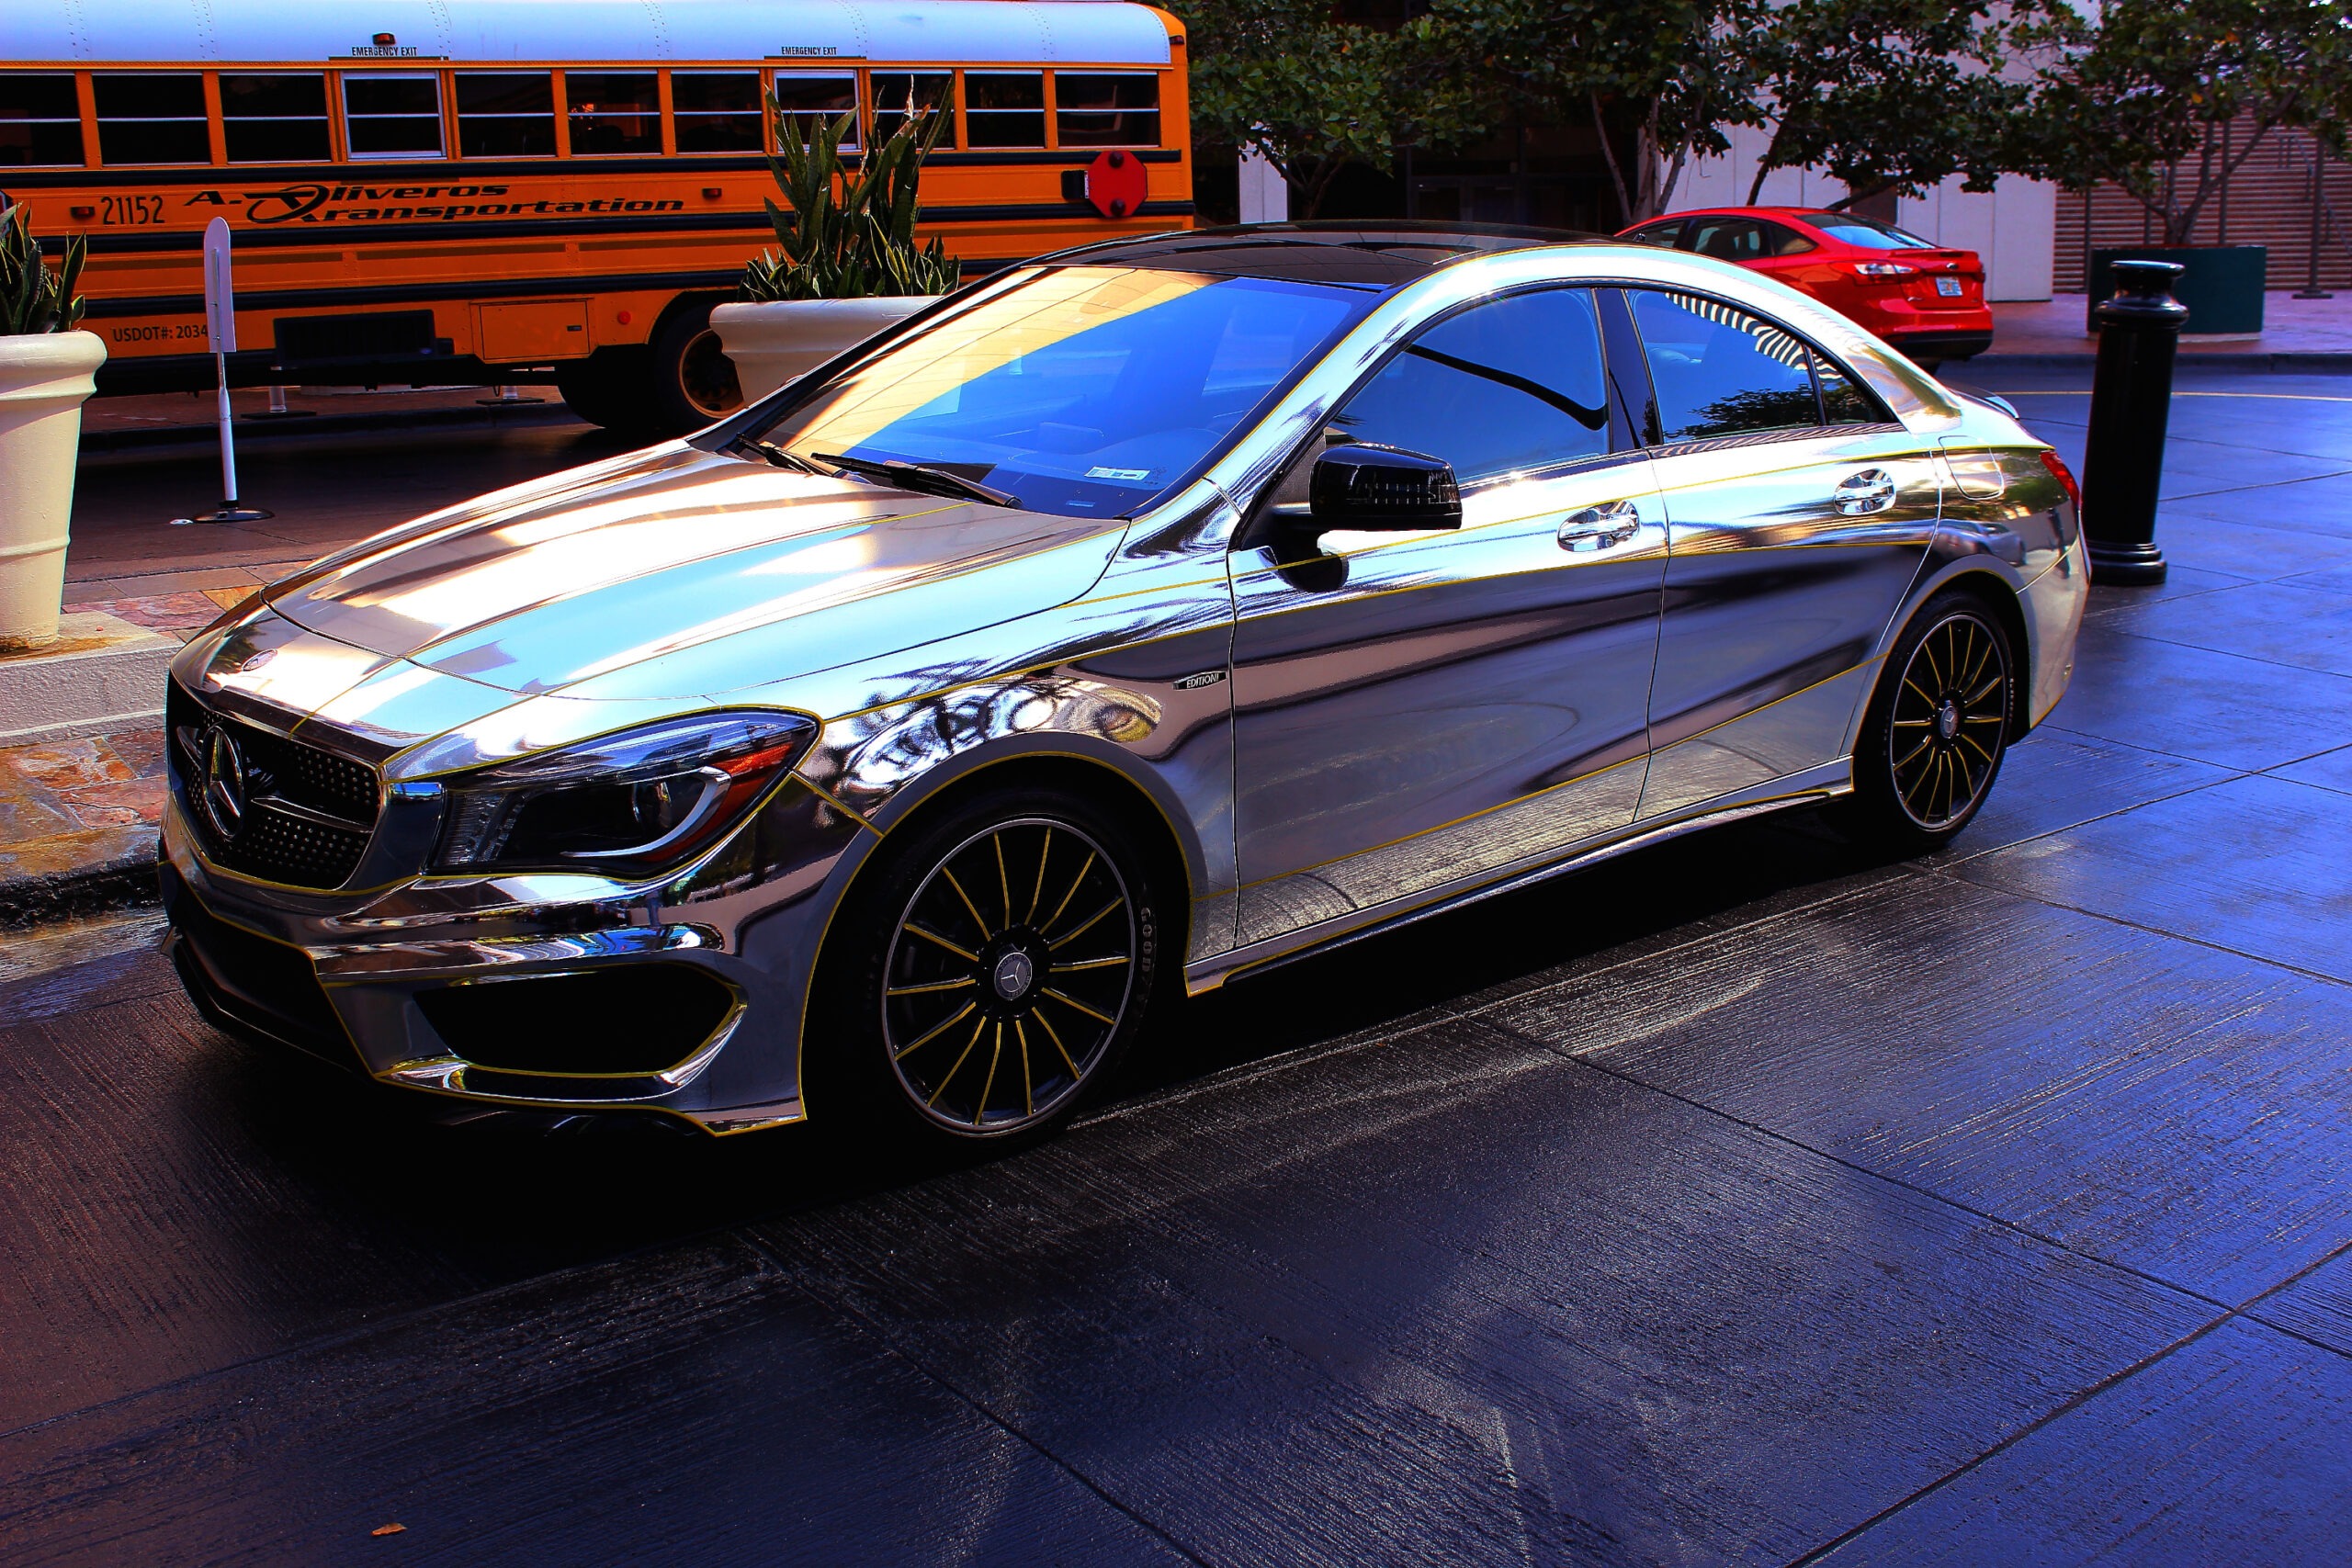 Shiny silver car